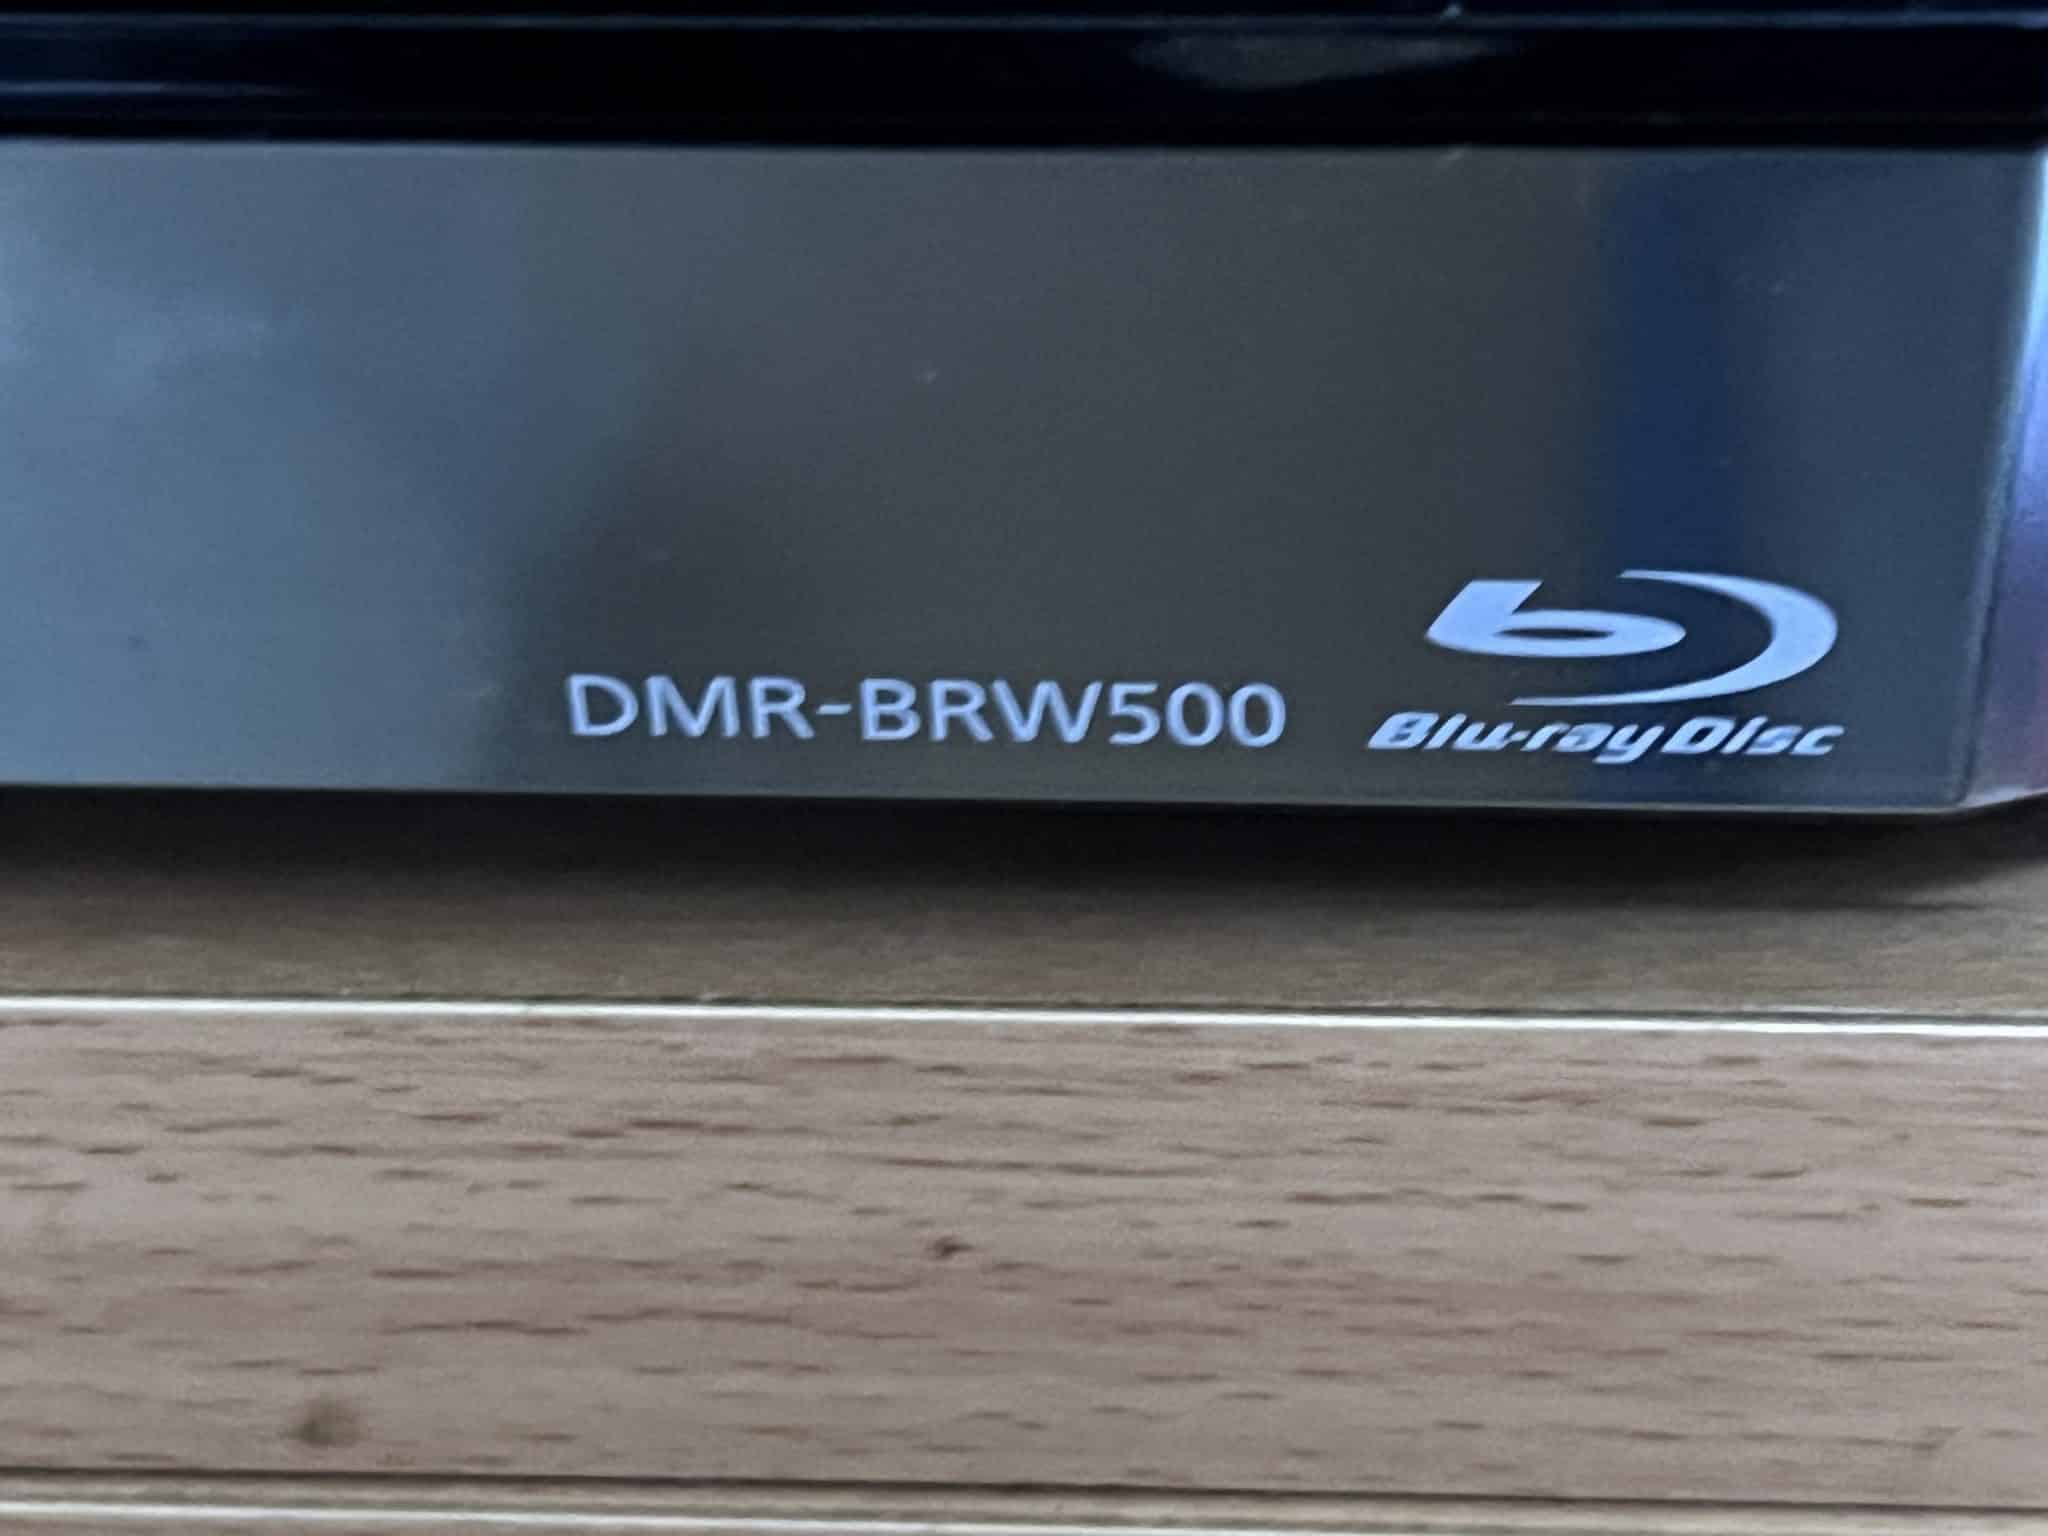 DMR-BRW500